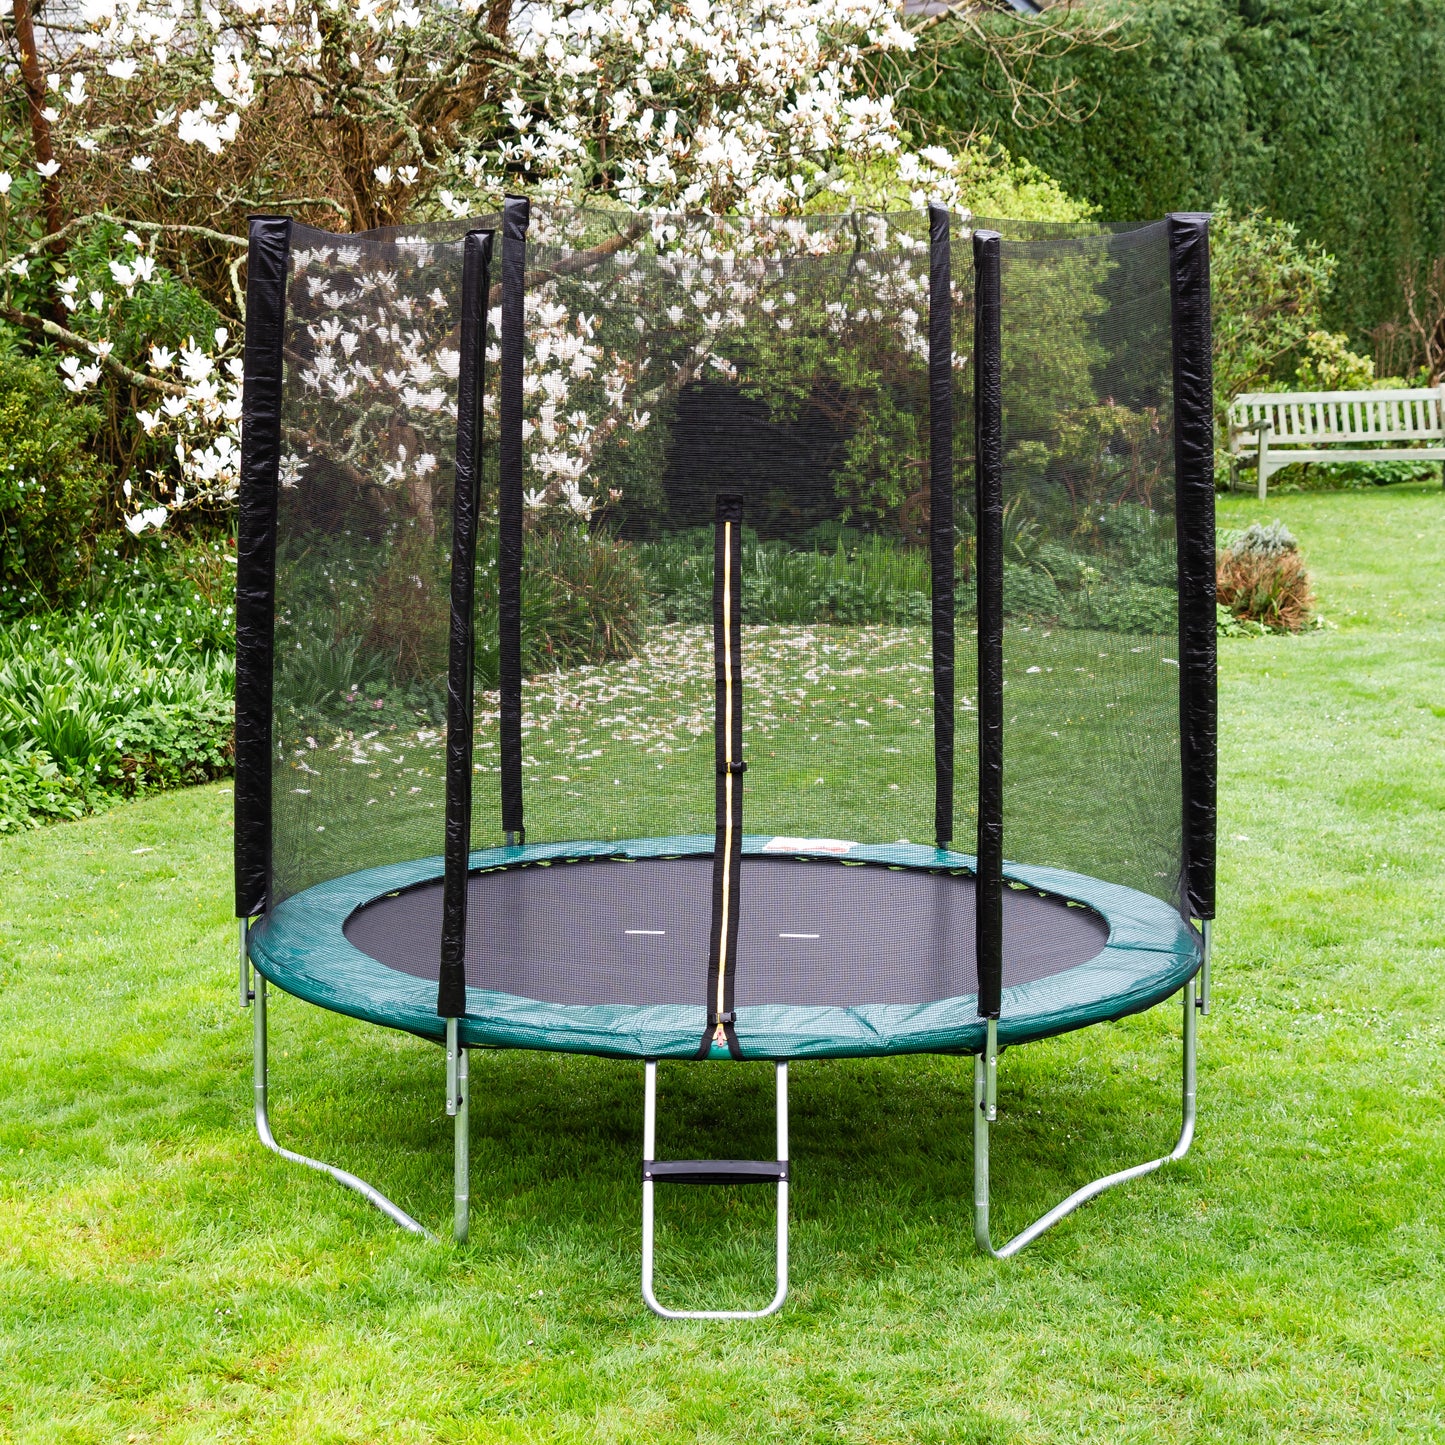 Kanga 6ft trampoline package